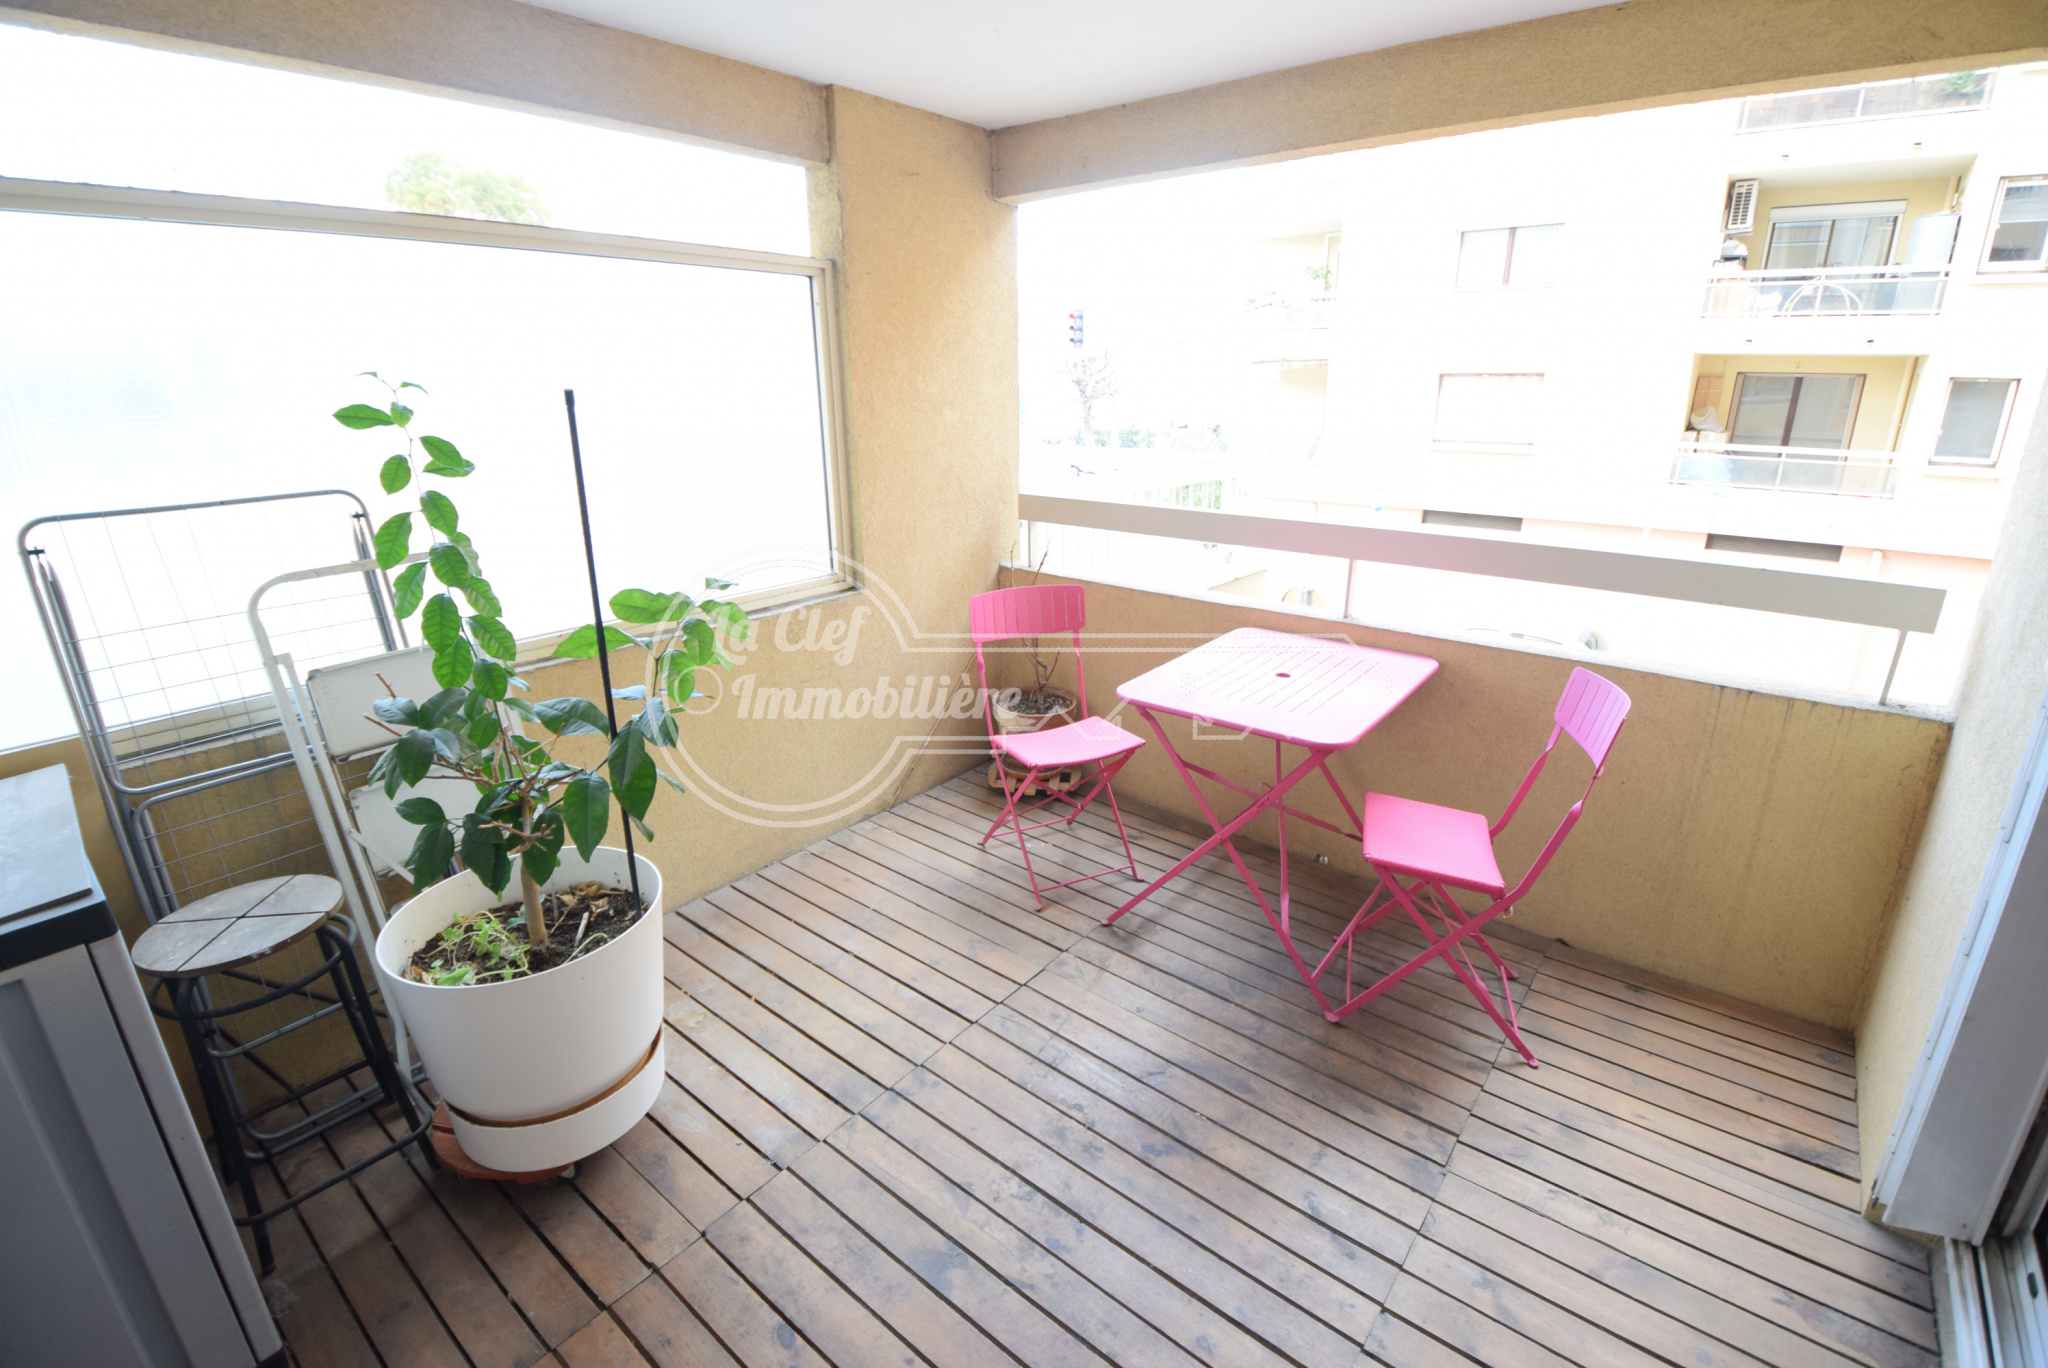 Vente Appartement 49m² 2 Pièces à Nice (06000) - La Clef Immobiliere